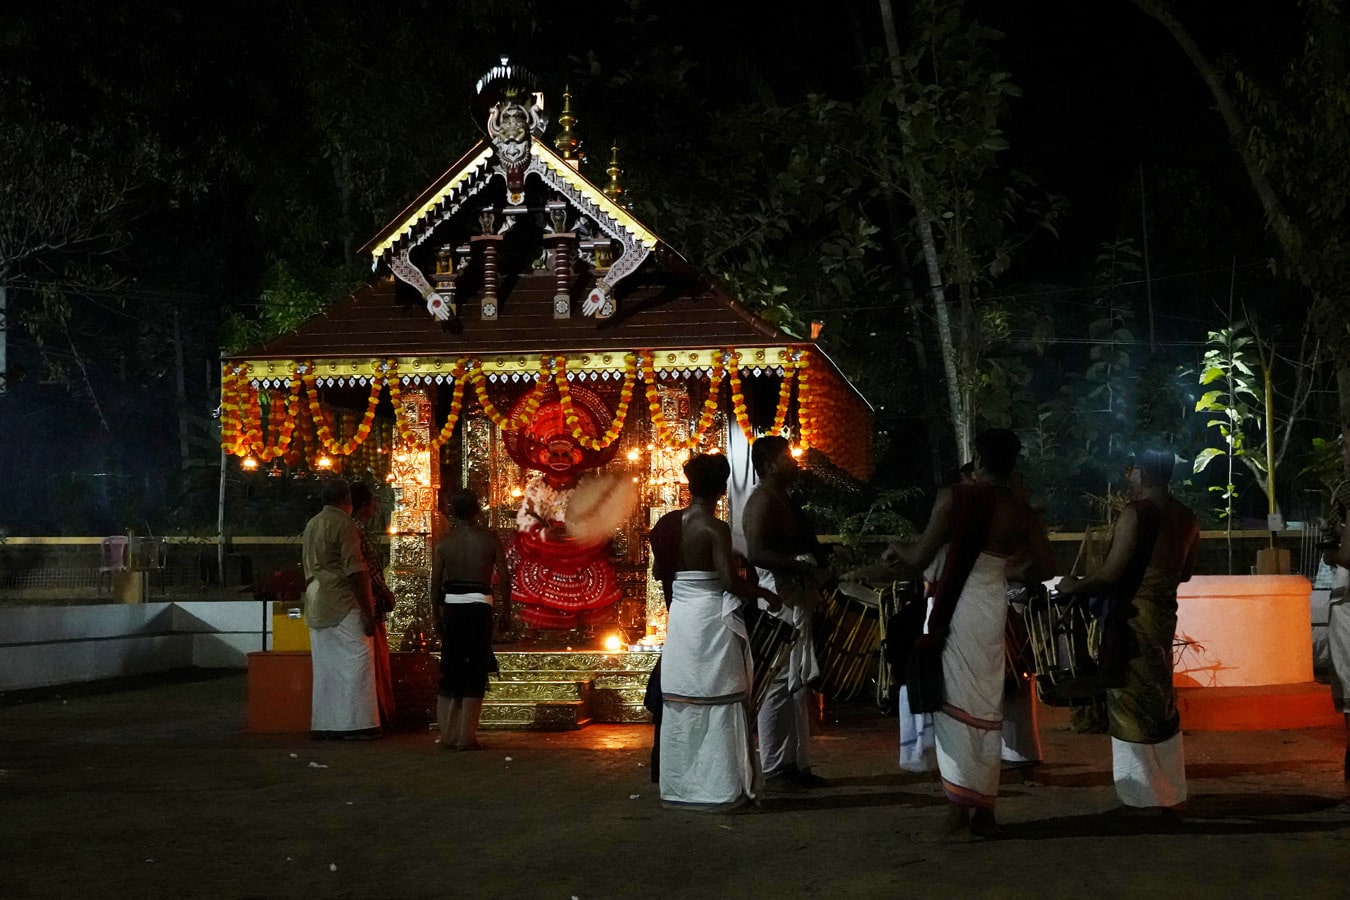 Le performer possédé par le dieu entré dans le templion - Rituel du theyyam - Kannur Malabar